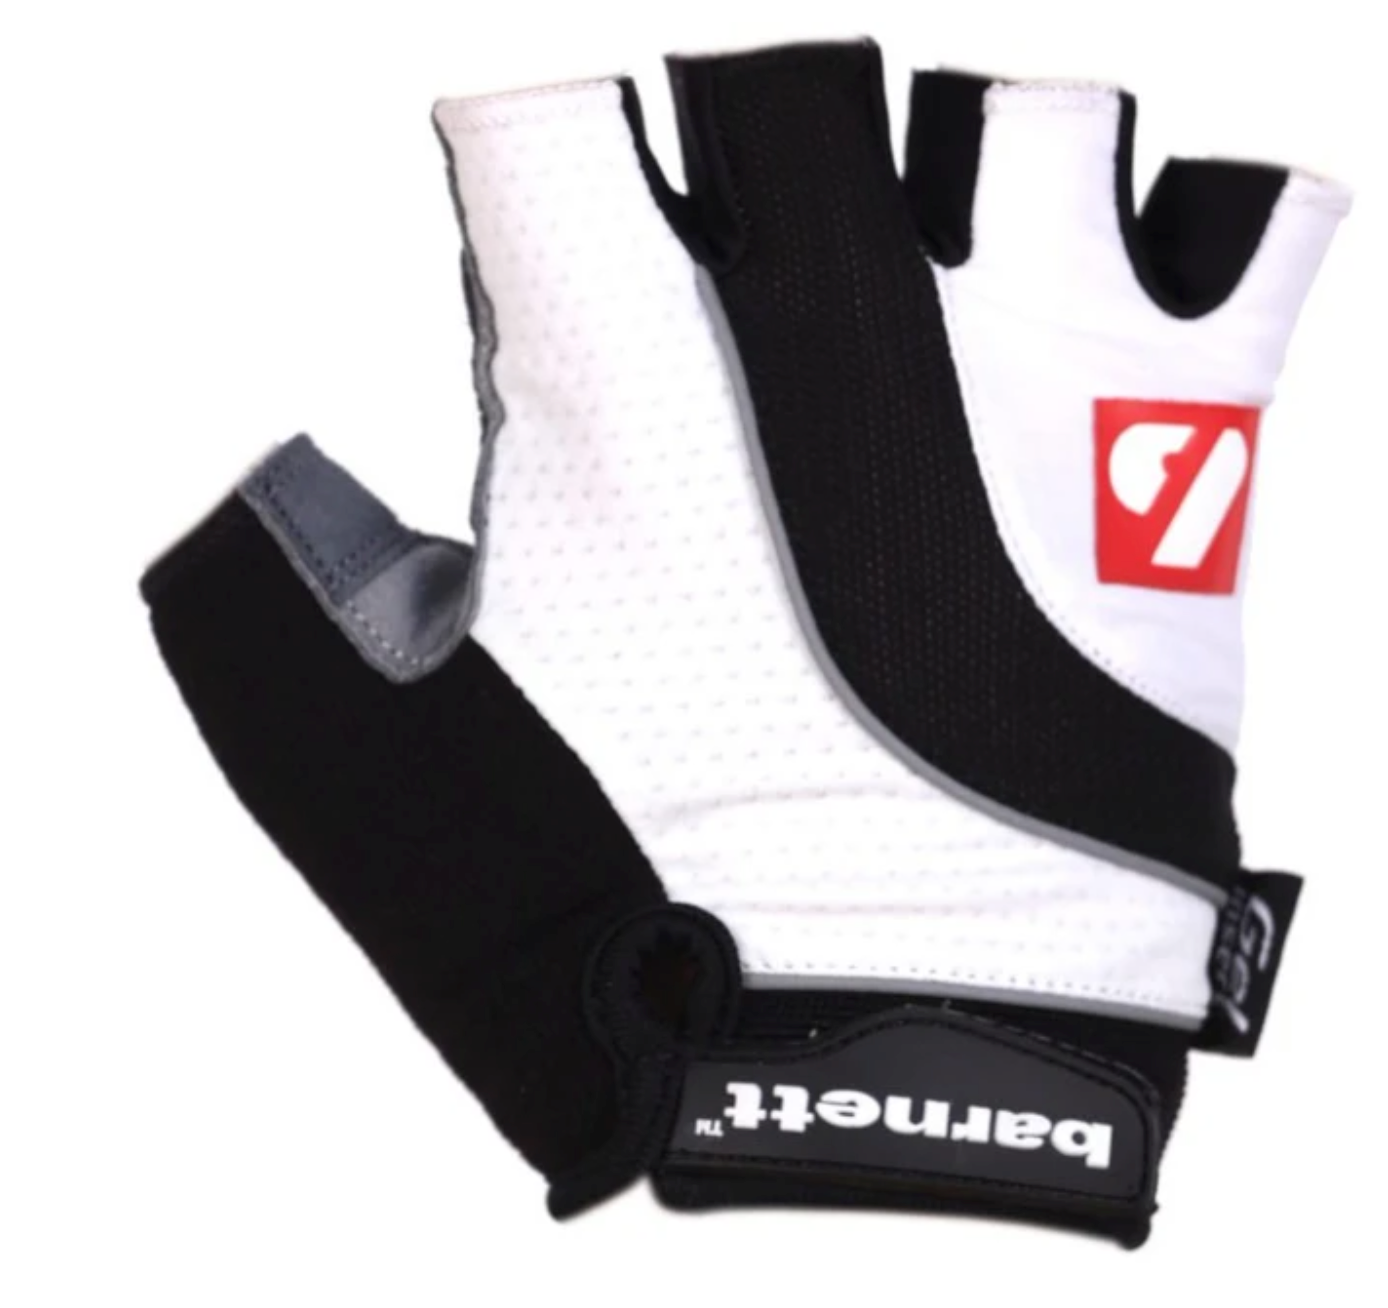 BG-04 Fingerless bike gloves for competitions